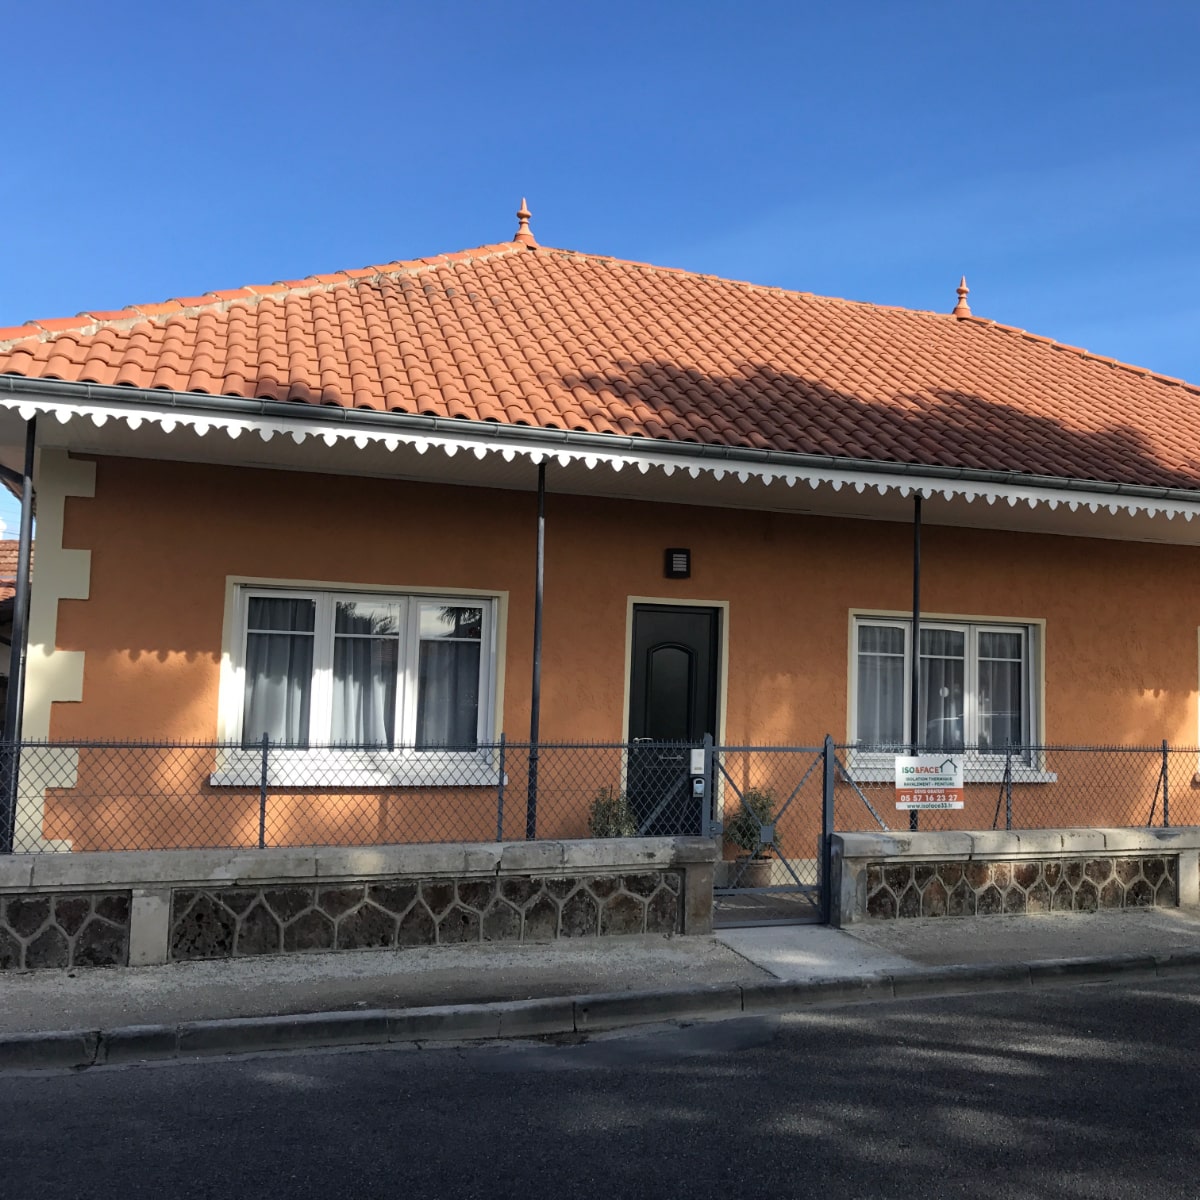 Ravalement de façade finition enduit coloré orange sur cette maison